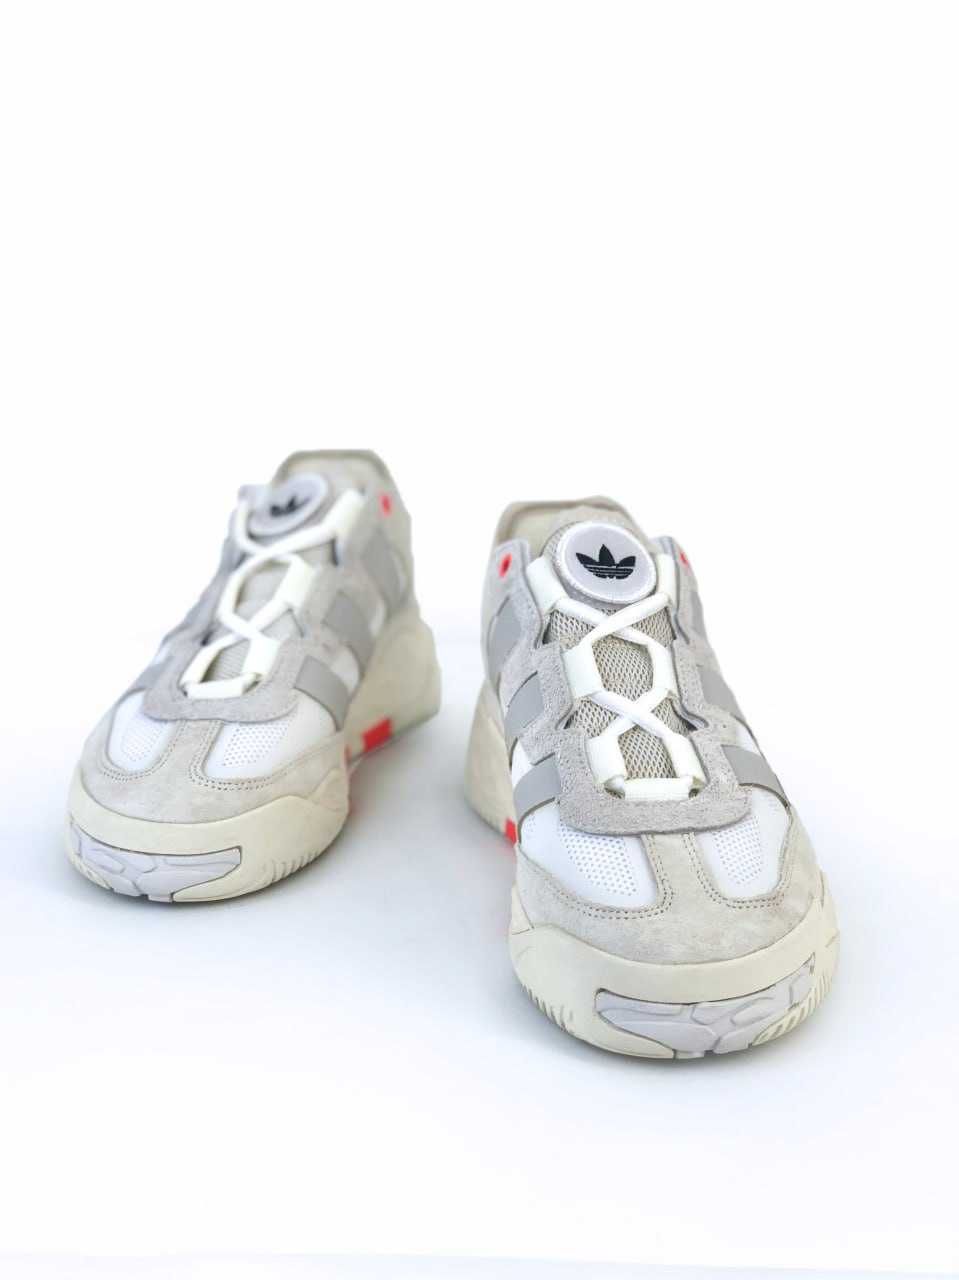 Чоловічі кросівки Adidas Lightstrike білий з сірим 7634 СУПЕР